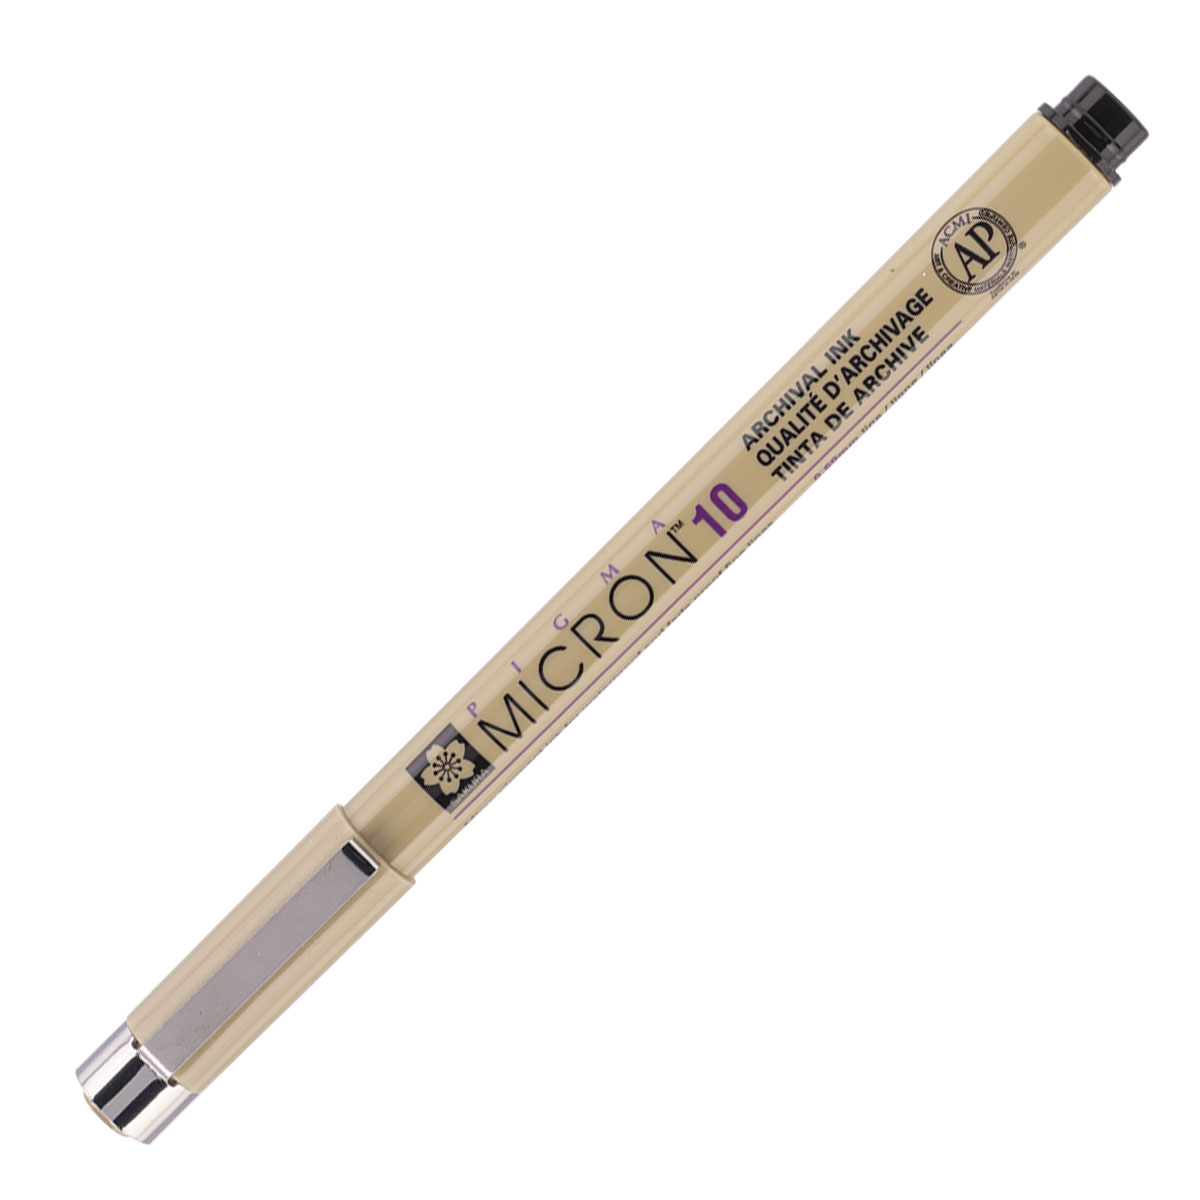 Sakura Pigma Micron Fineliner Pens, Archival Black, 01 Tip Size, 3